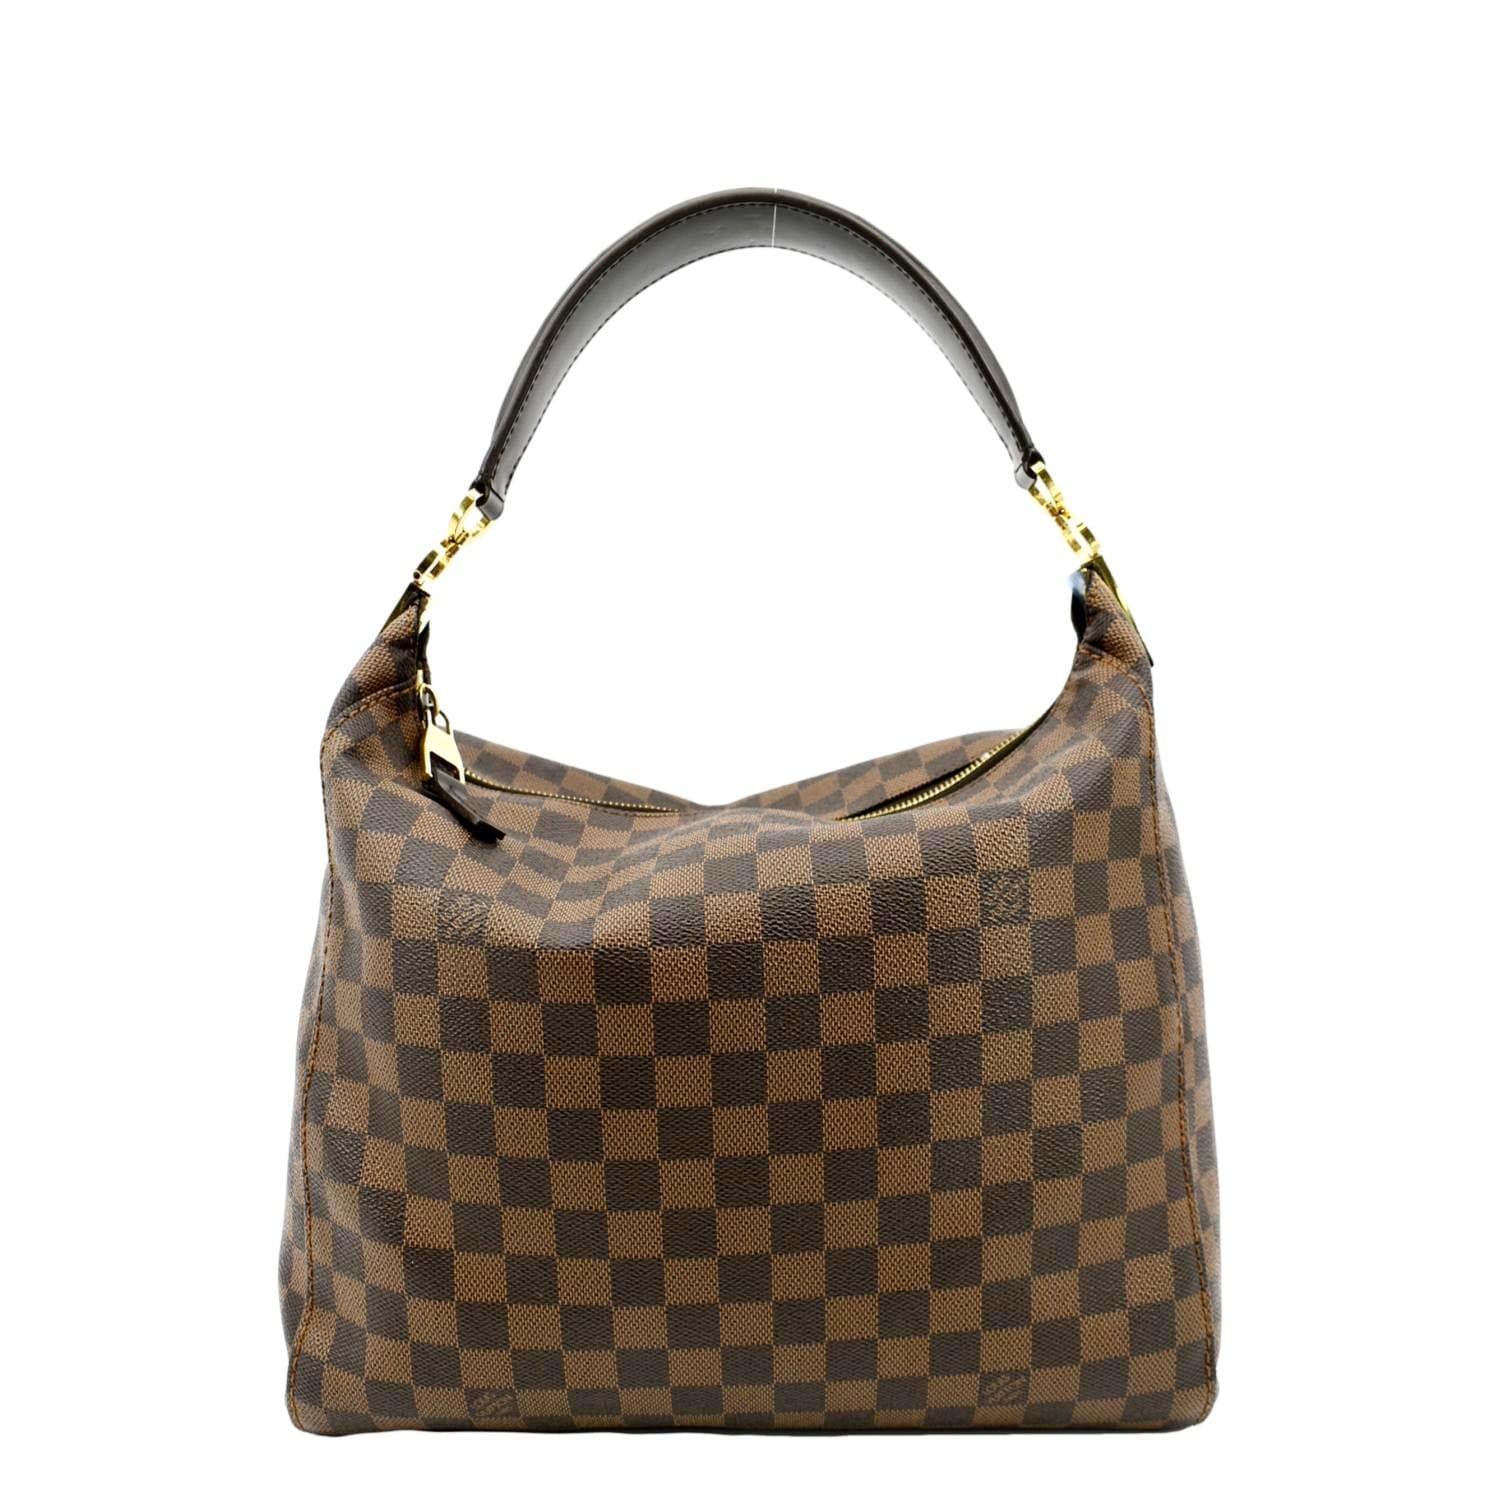 Portobello leather handbag